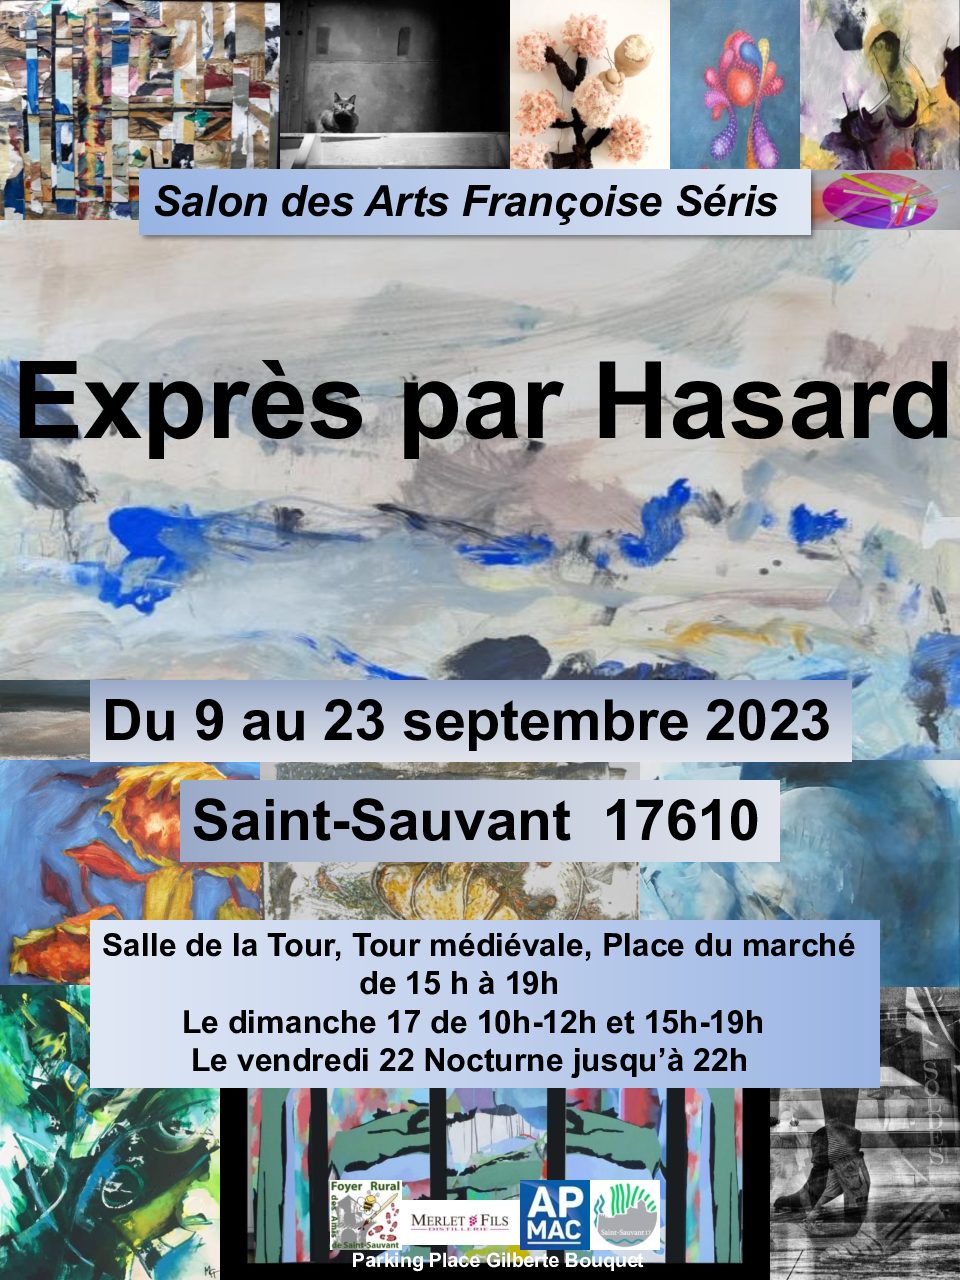 SALON DES ARTS Françoise SERIS du 9 au 23 septembre 2023